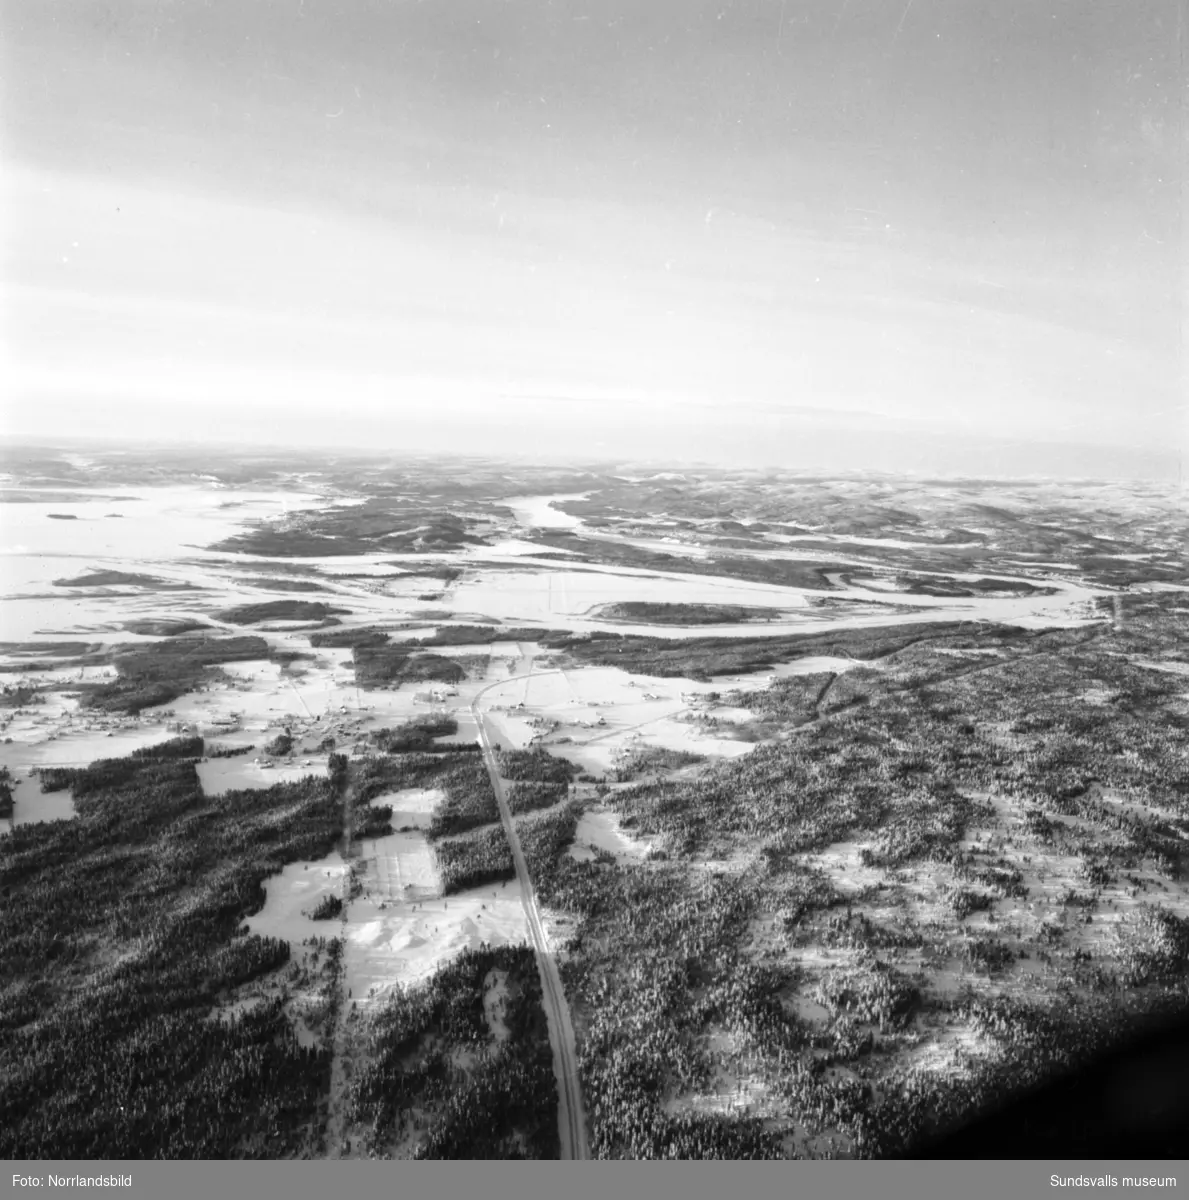 Flygfoton över issituationen till havs mellan Sundsvall och Örnsköldsvik. Även snö- och isläget utefter älvarna exempelvis Järkvissle, Liden och Bergeforsen.